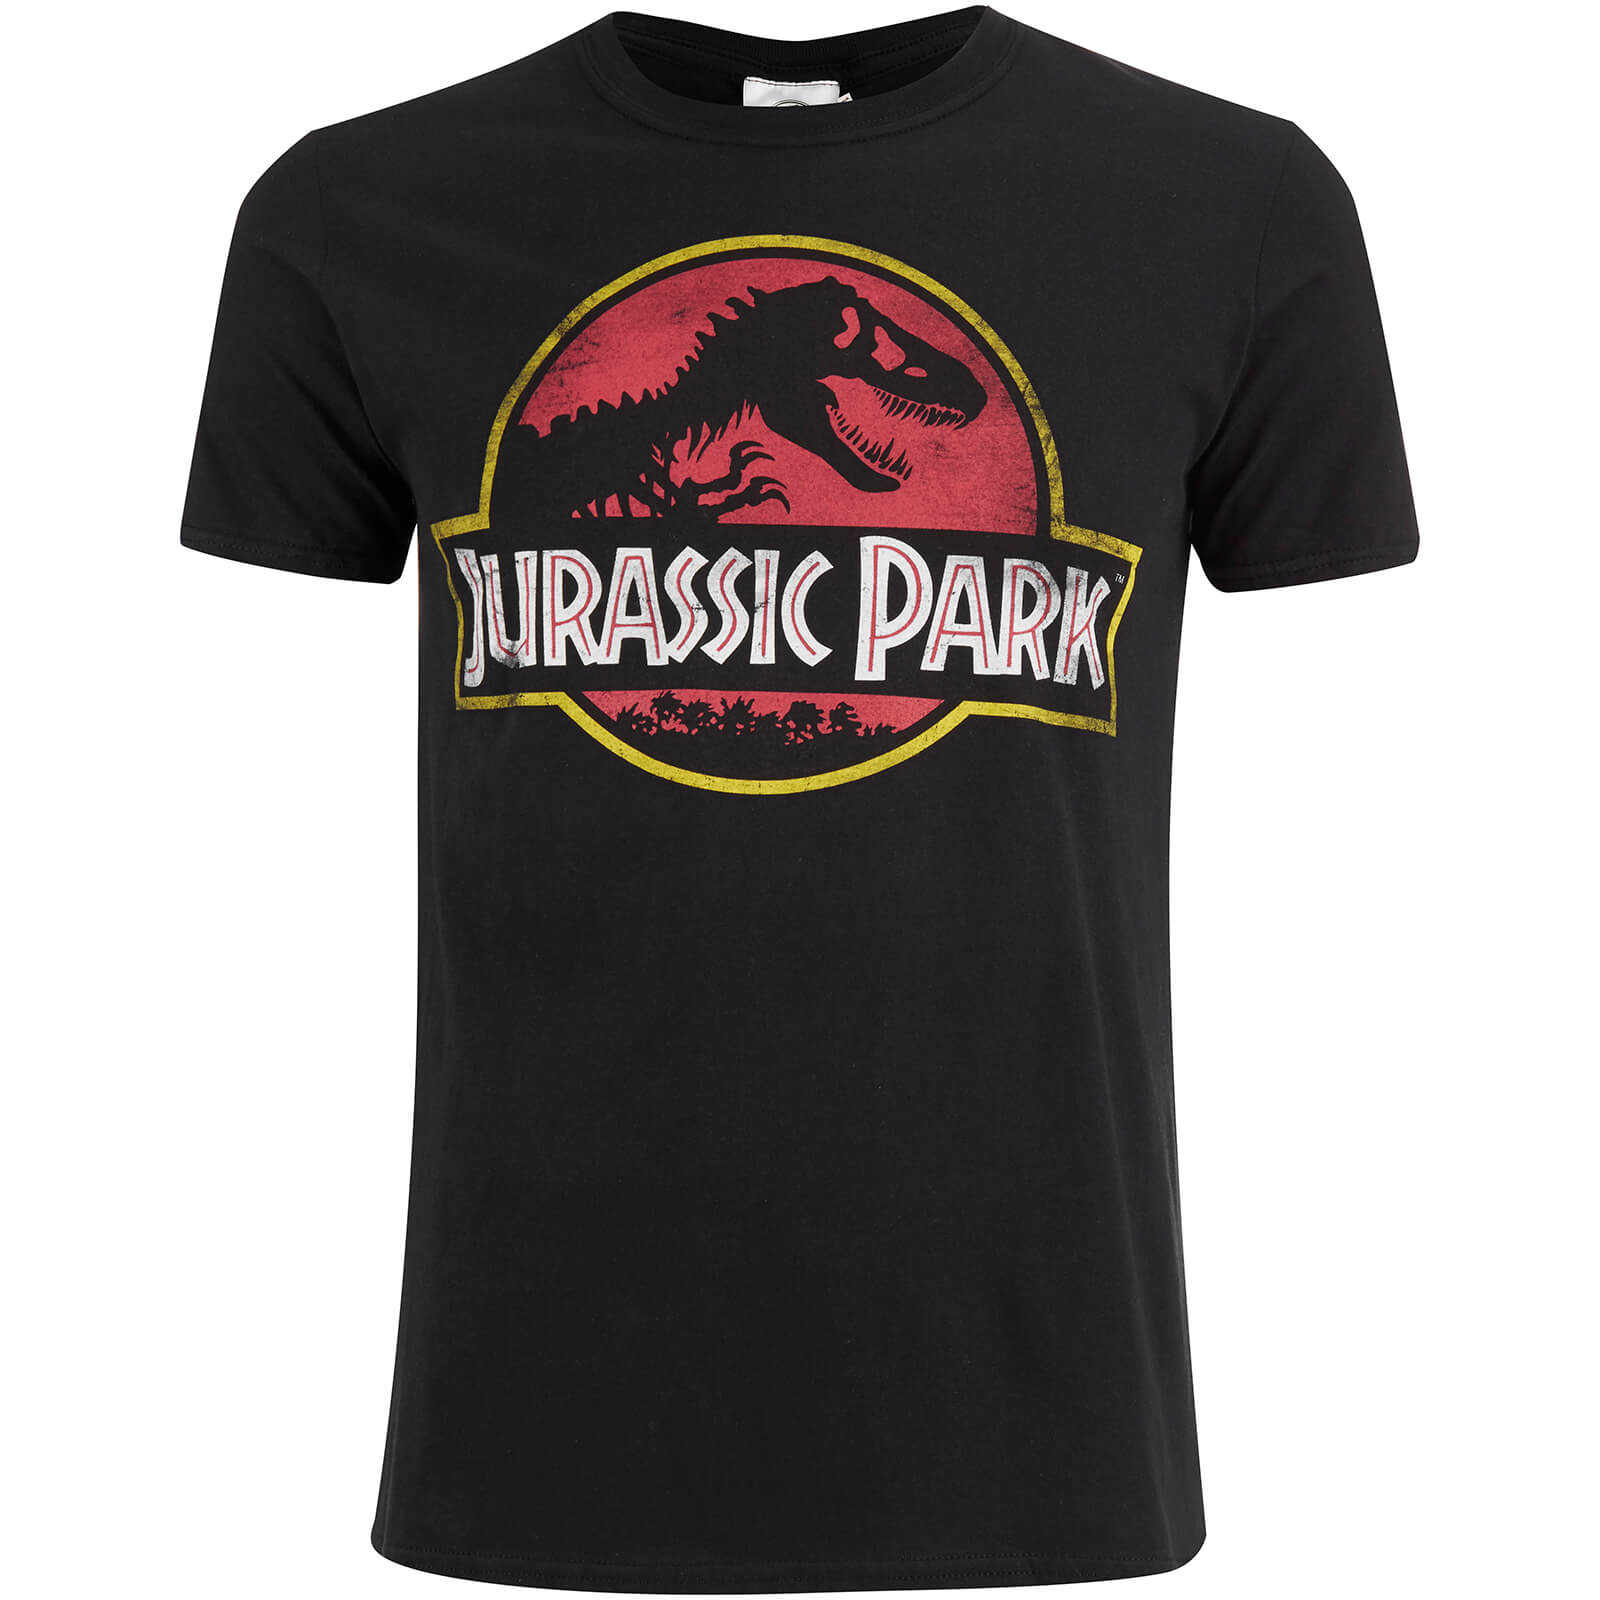 Jurassic Park Men's Classic Logo T-Shirt - Black - L - Black